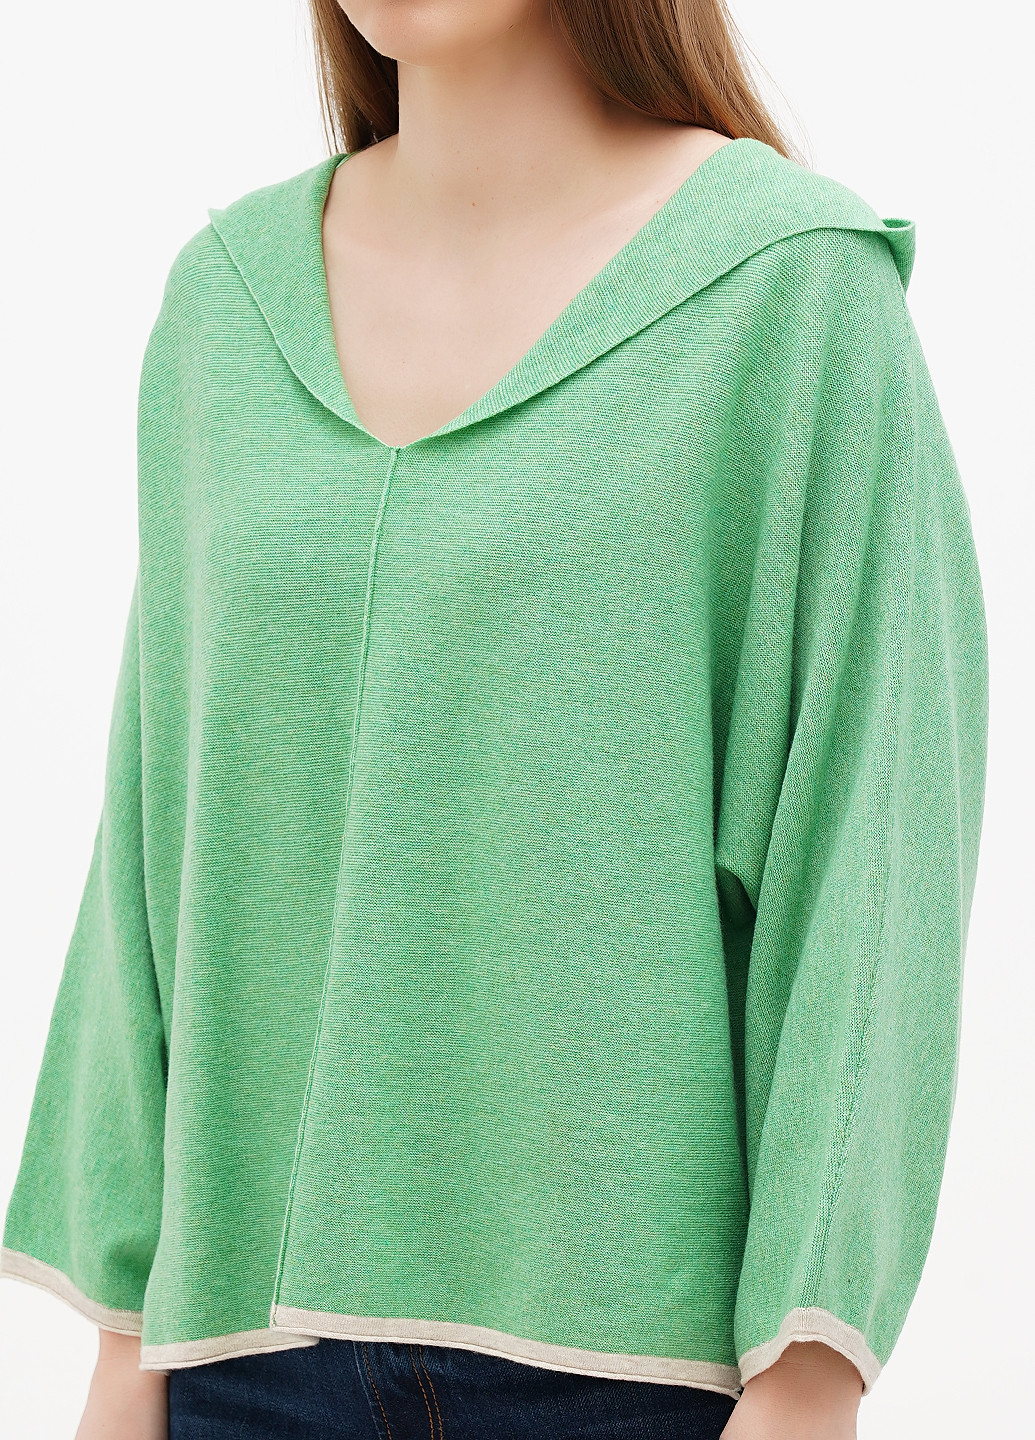 Зеленый демисезонный пуловер пуловер Tom Tailor